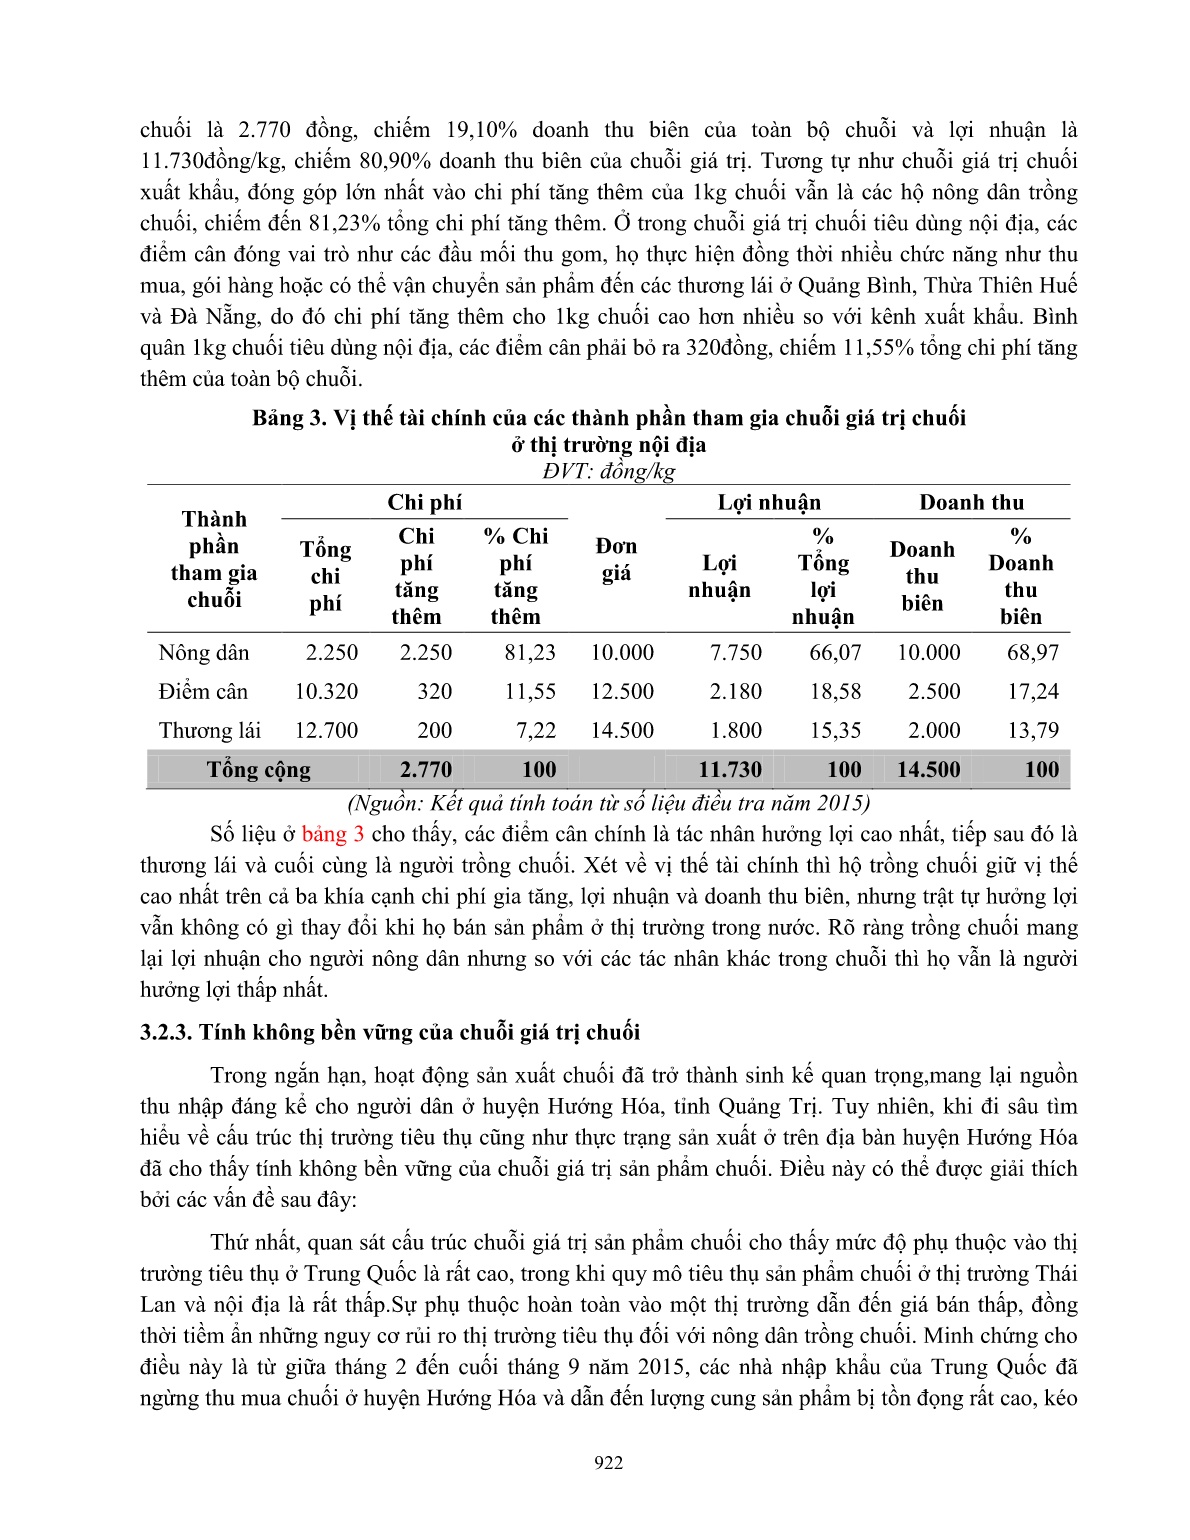 Phân tích chuỗi giá trị sản phẩm chuối ở huyện Hướng Hóa, tỉnh Quảng Trị trang 10